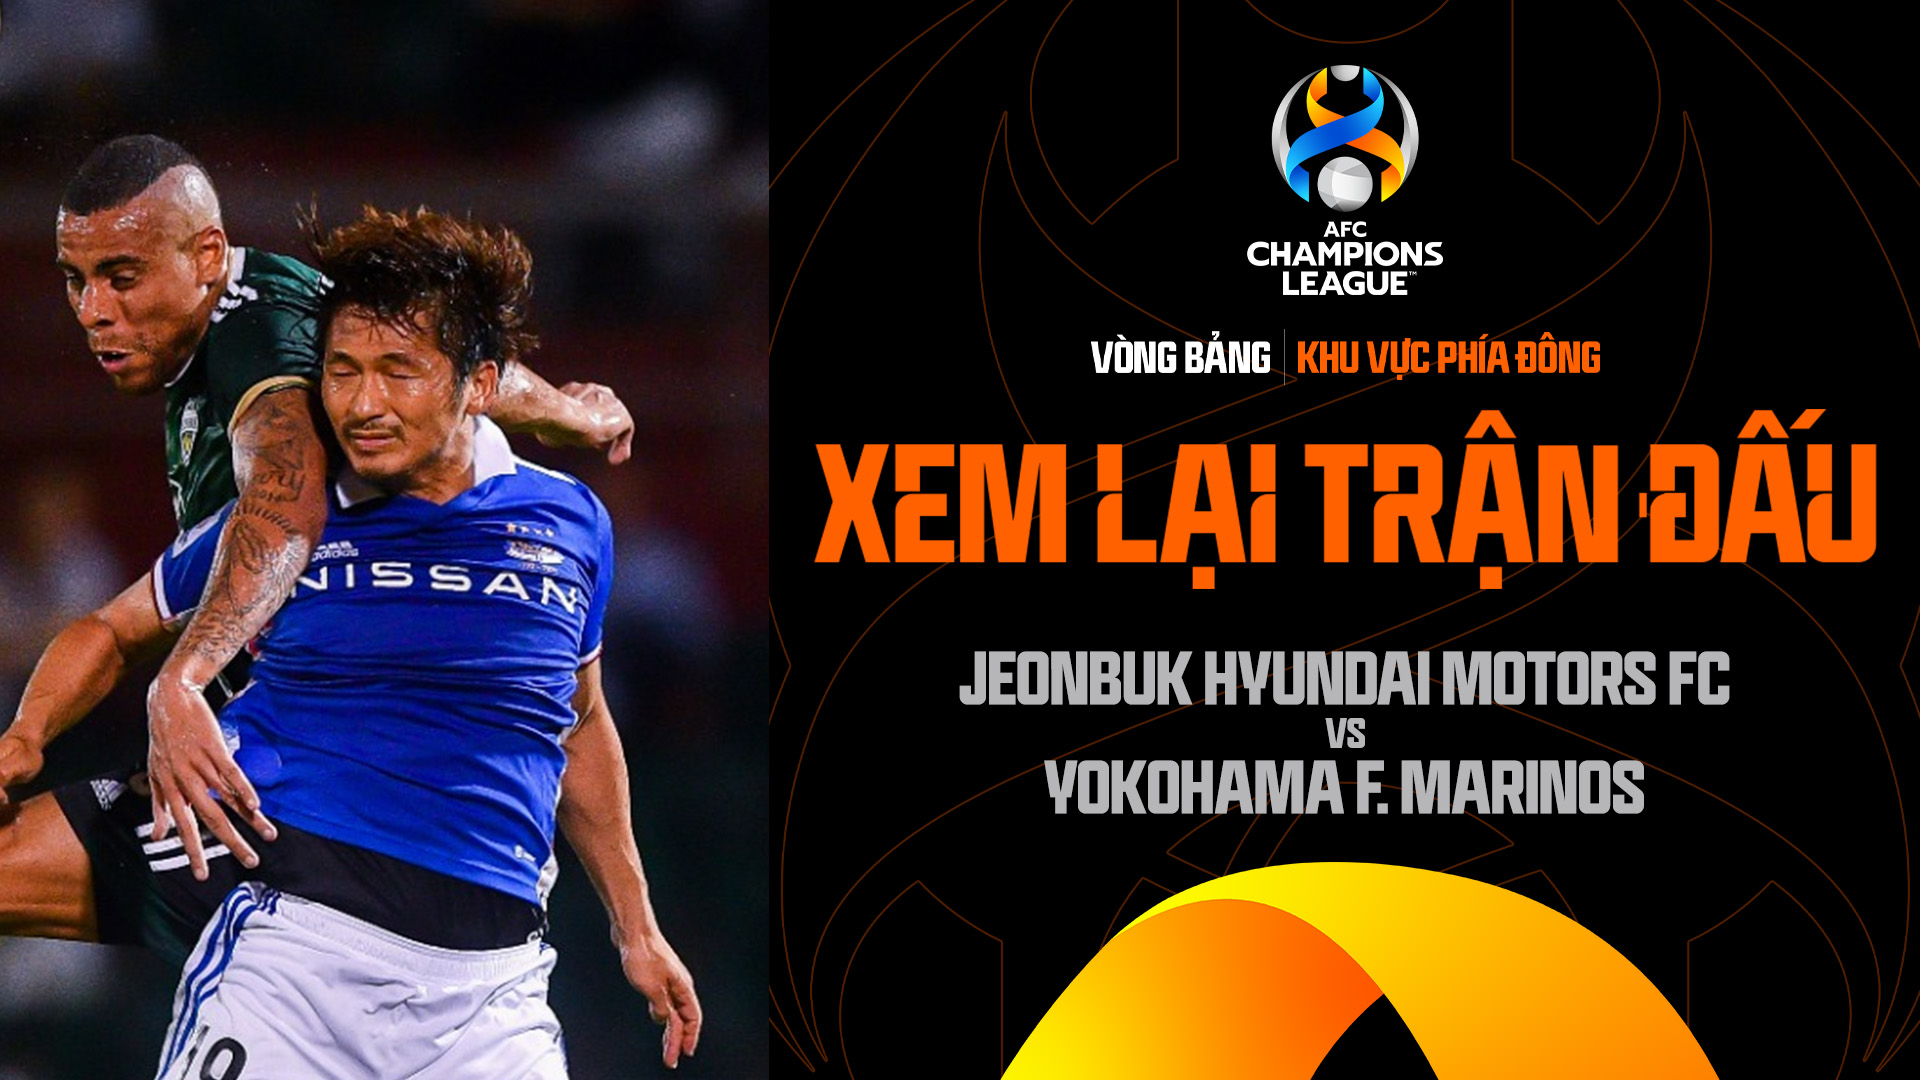 Jeonbuk Hyundai Motors FC - Yokohama F. Marinos | Xem lại trận đấu - AFC Champions League